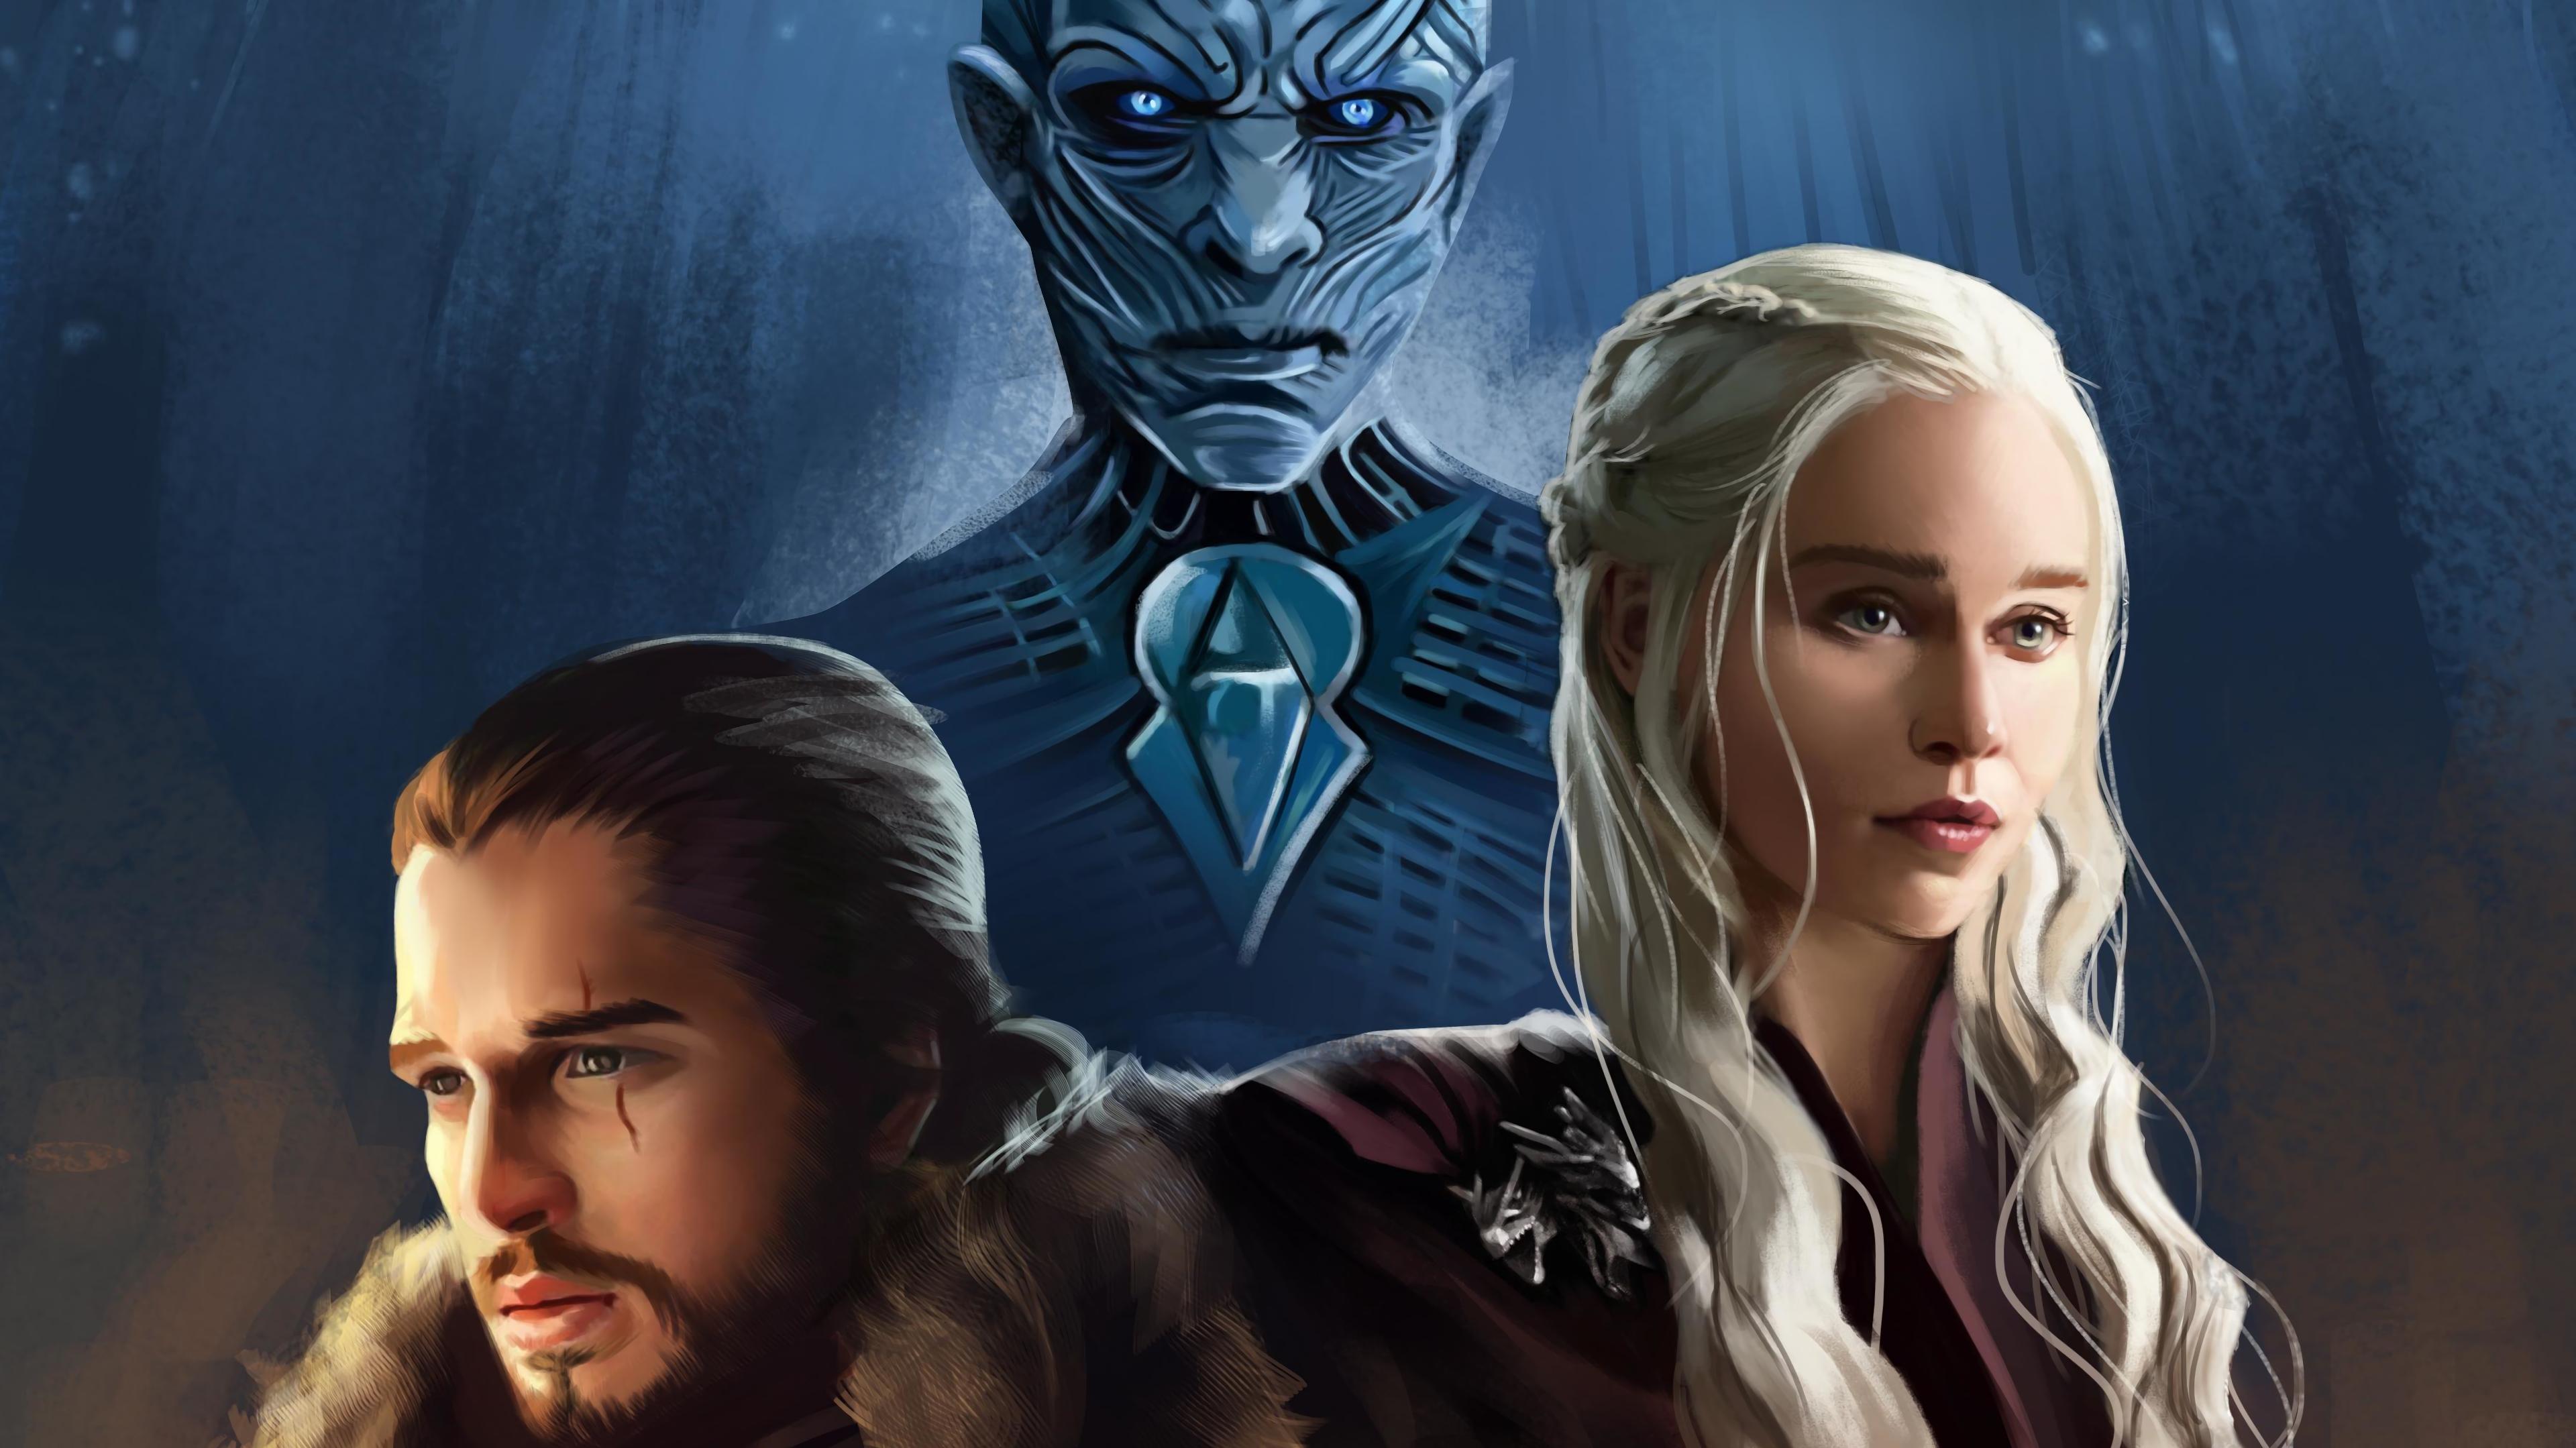 Free download Game of Thrones Night King Daenerys Targaryen Jon